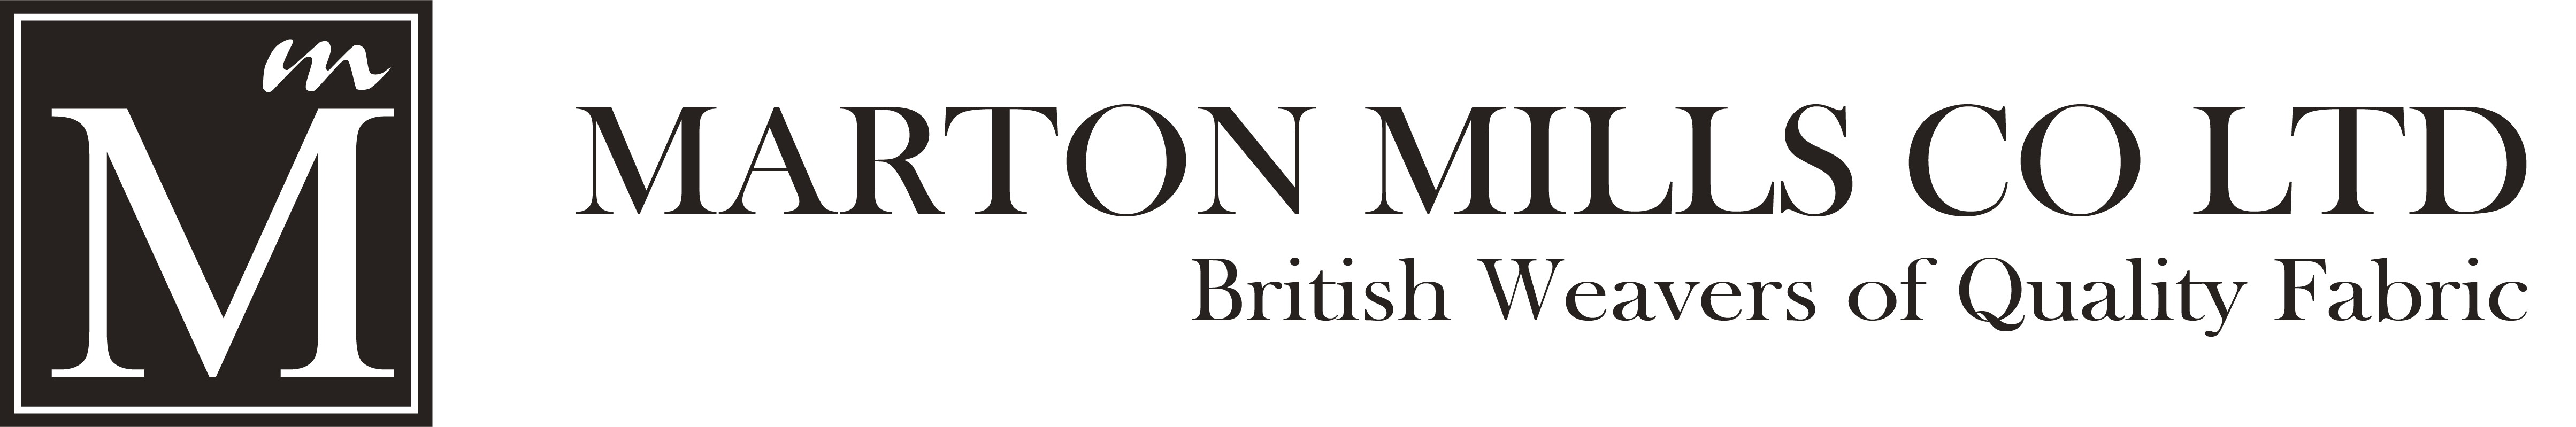 Marton Mills installs WeaveMaster